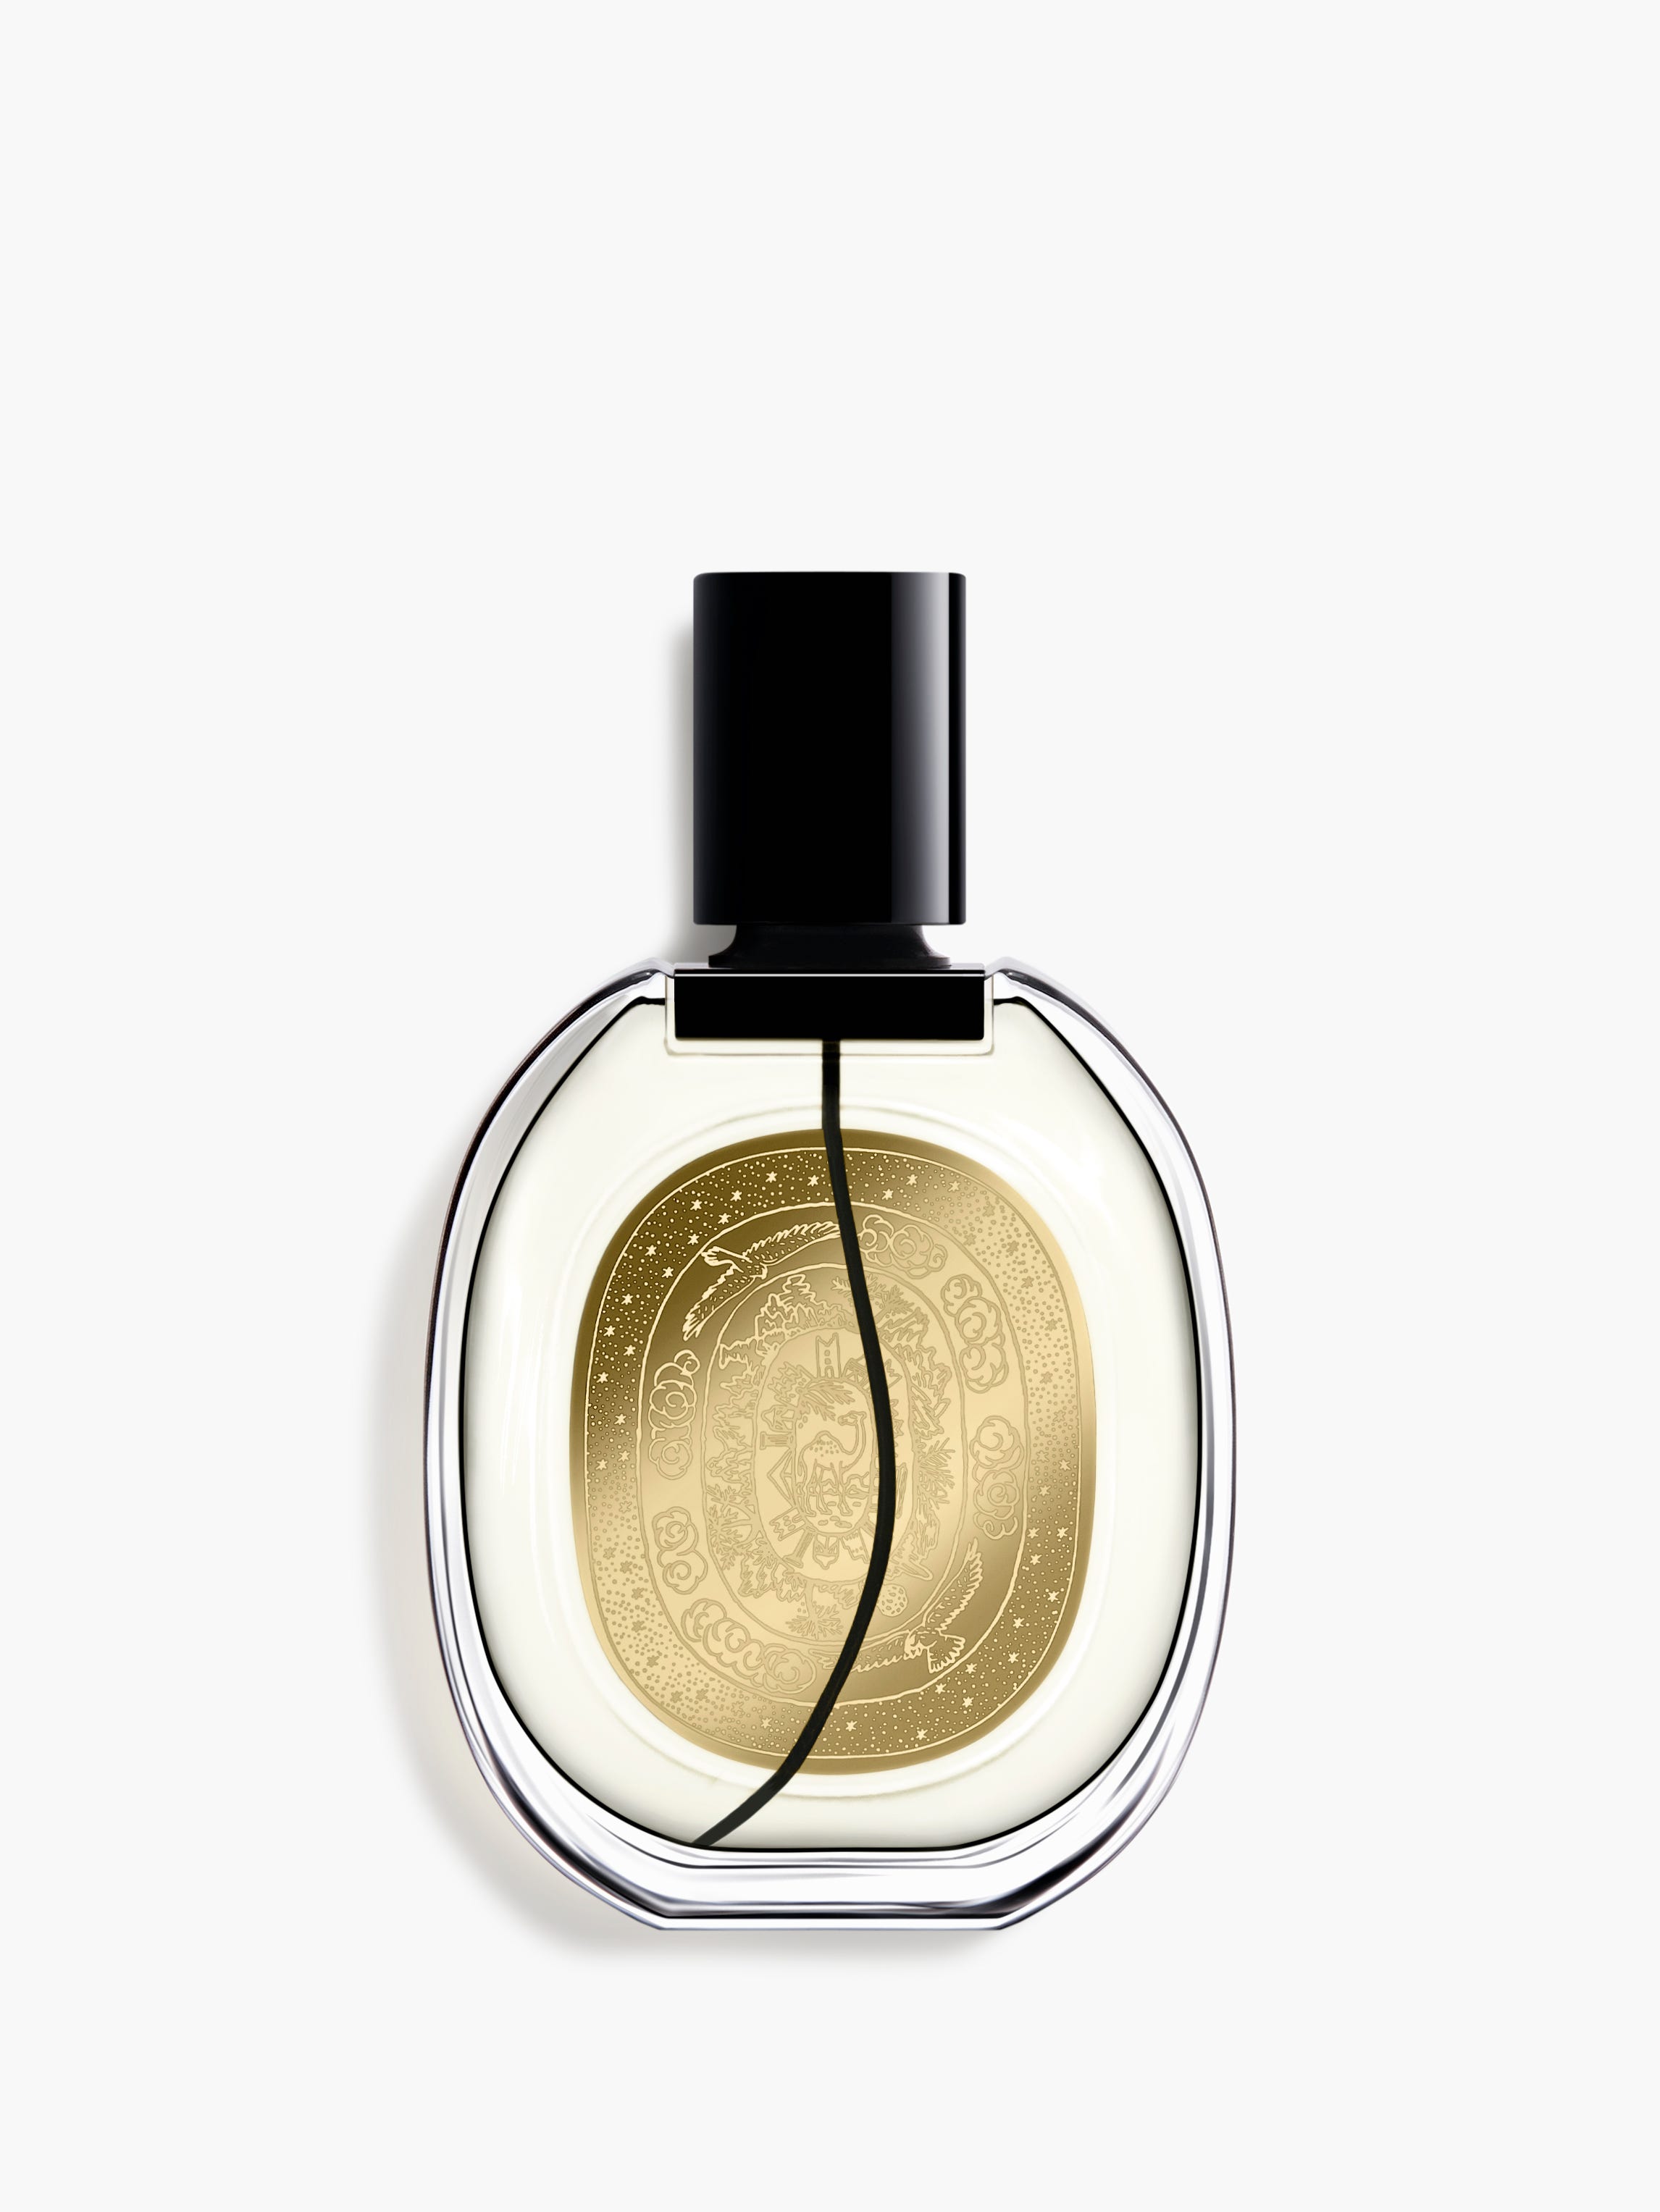 Eau Rihla - Eau de parfum 75ml | Diptyque Paris